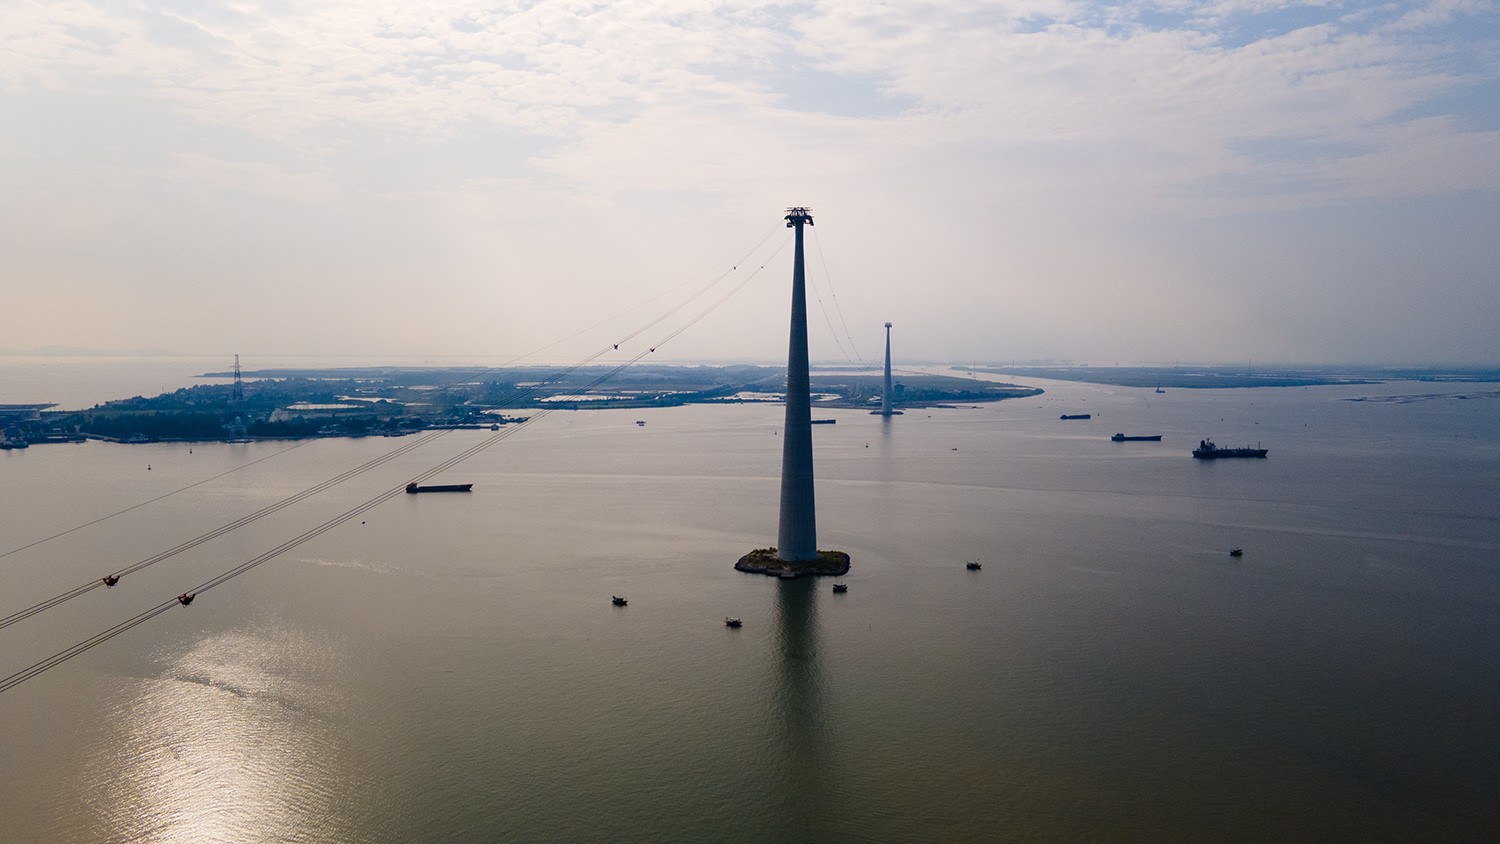 Dự án tuyến cáp treo vượt biển Cát Hải – Phù Long (huyện Cát Hải, TP Hải Phòng) được khánh thành ngày 6/6/2020, do Tập đoàn Sun Group làm chủ đầu tư.